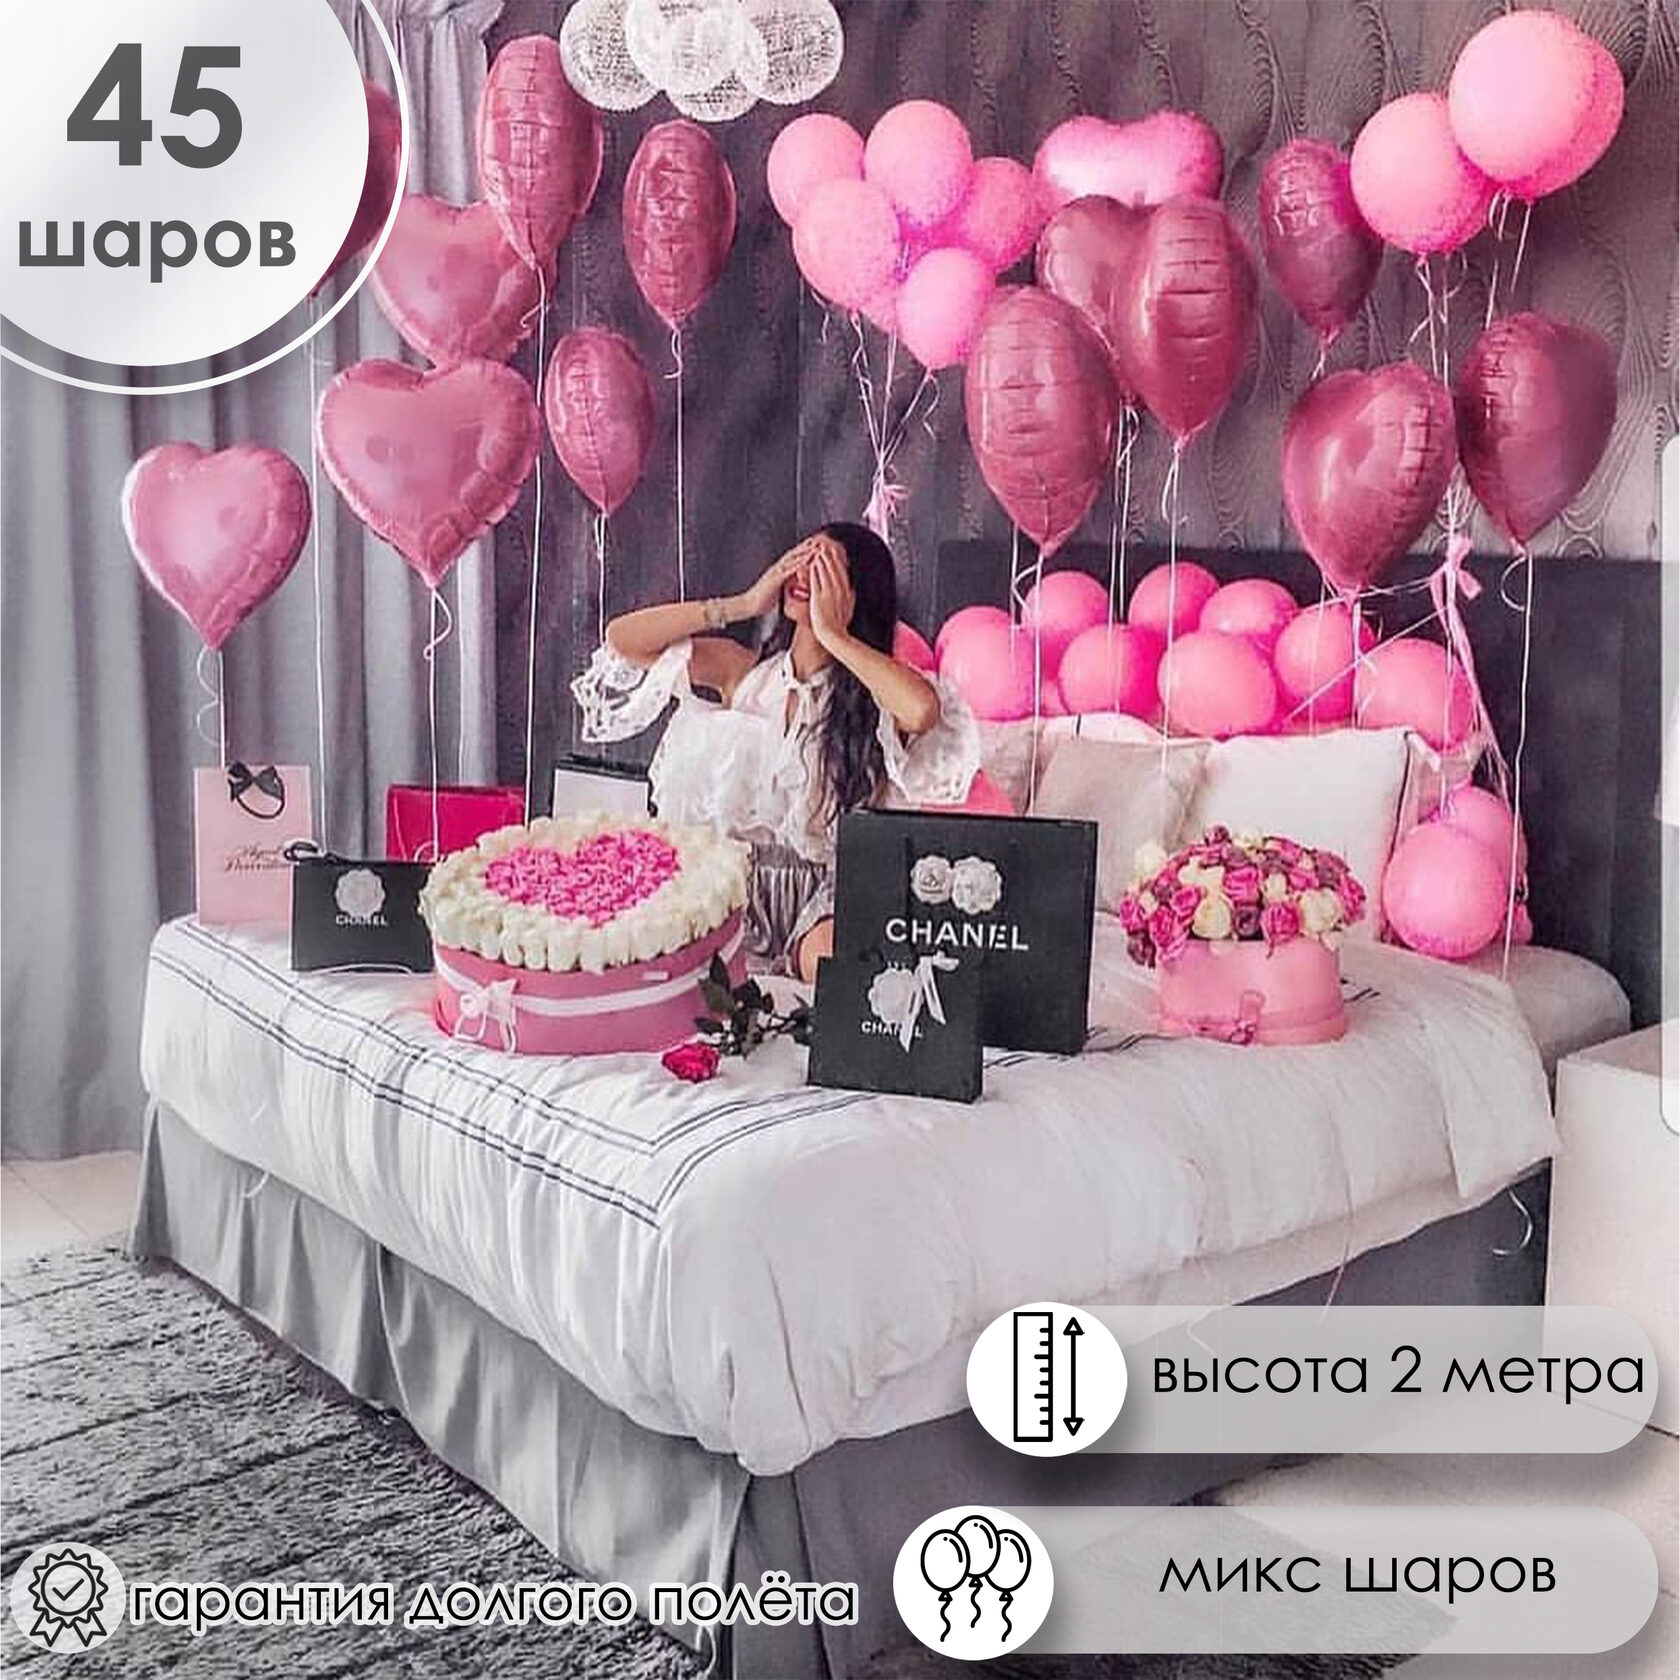 Оформление комнаты воздушными шарами на день рождения купить в Москве